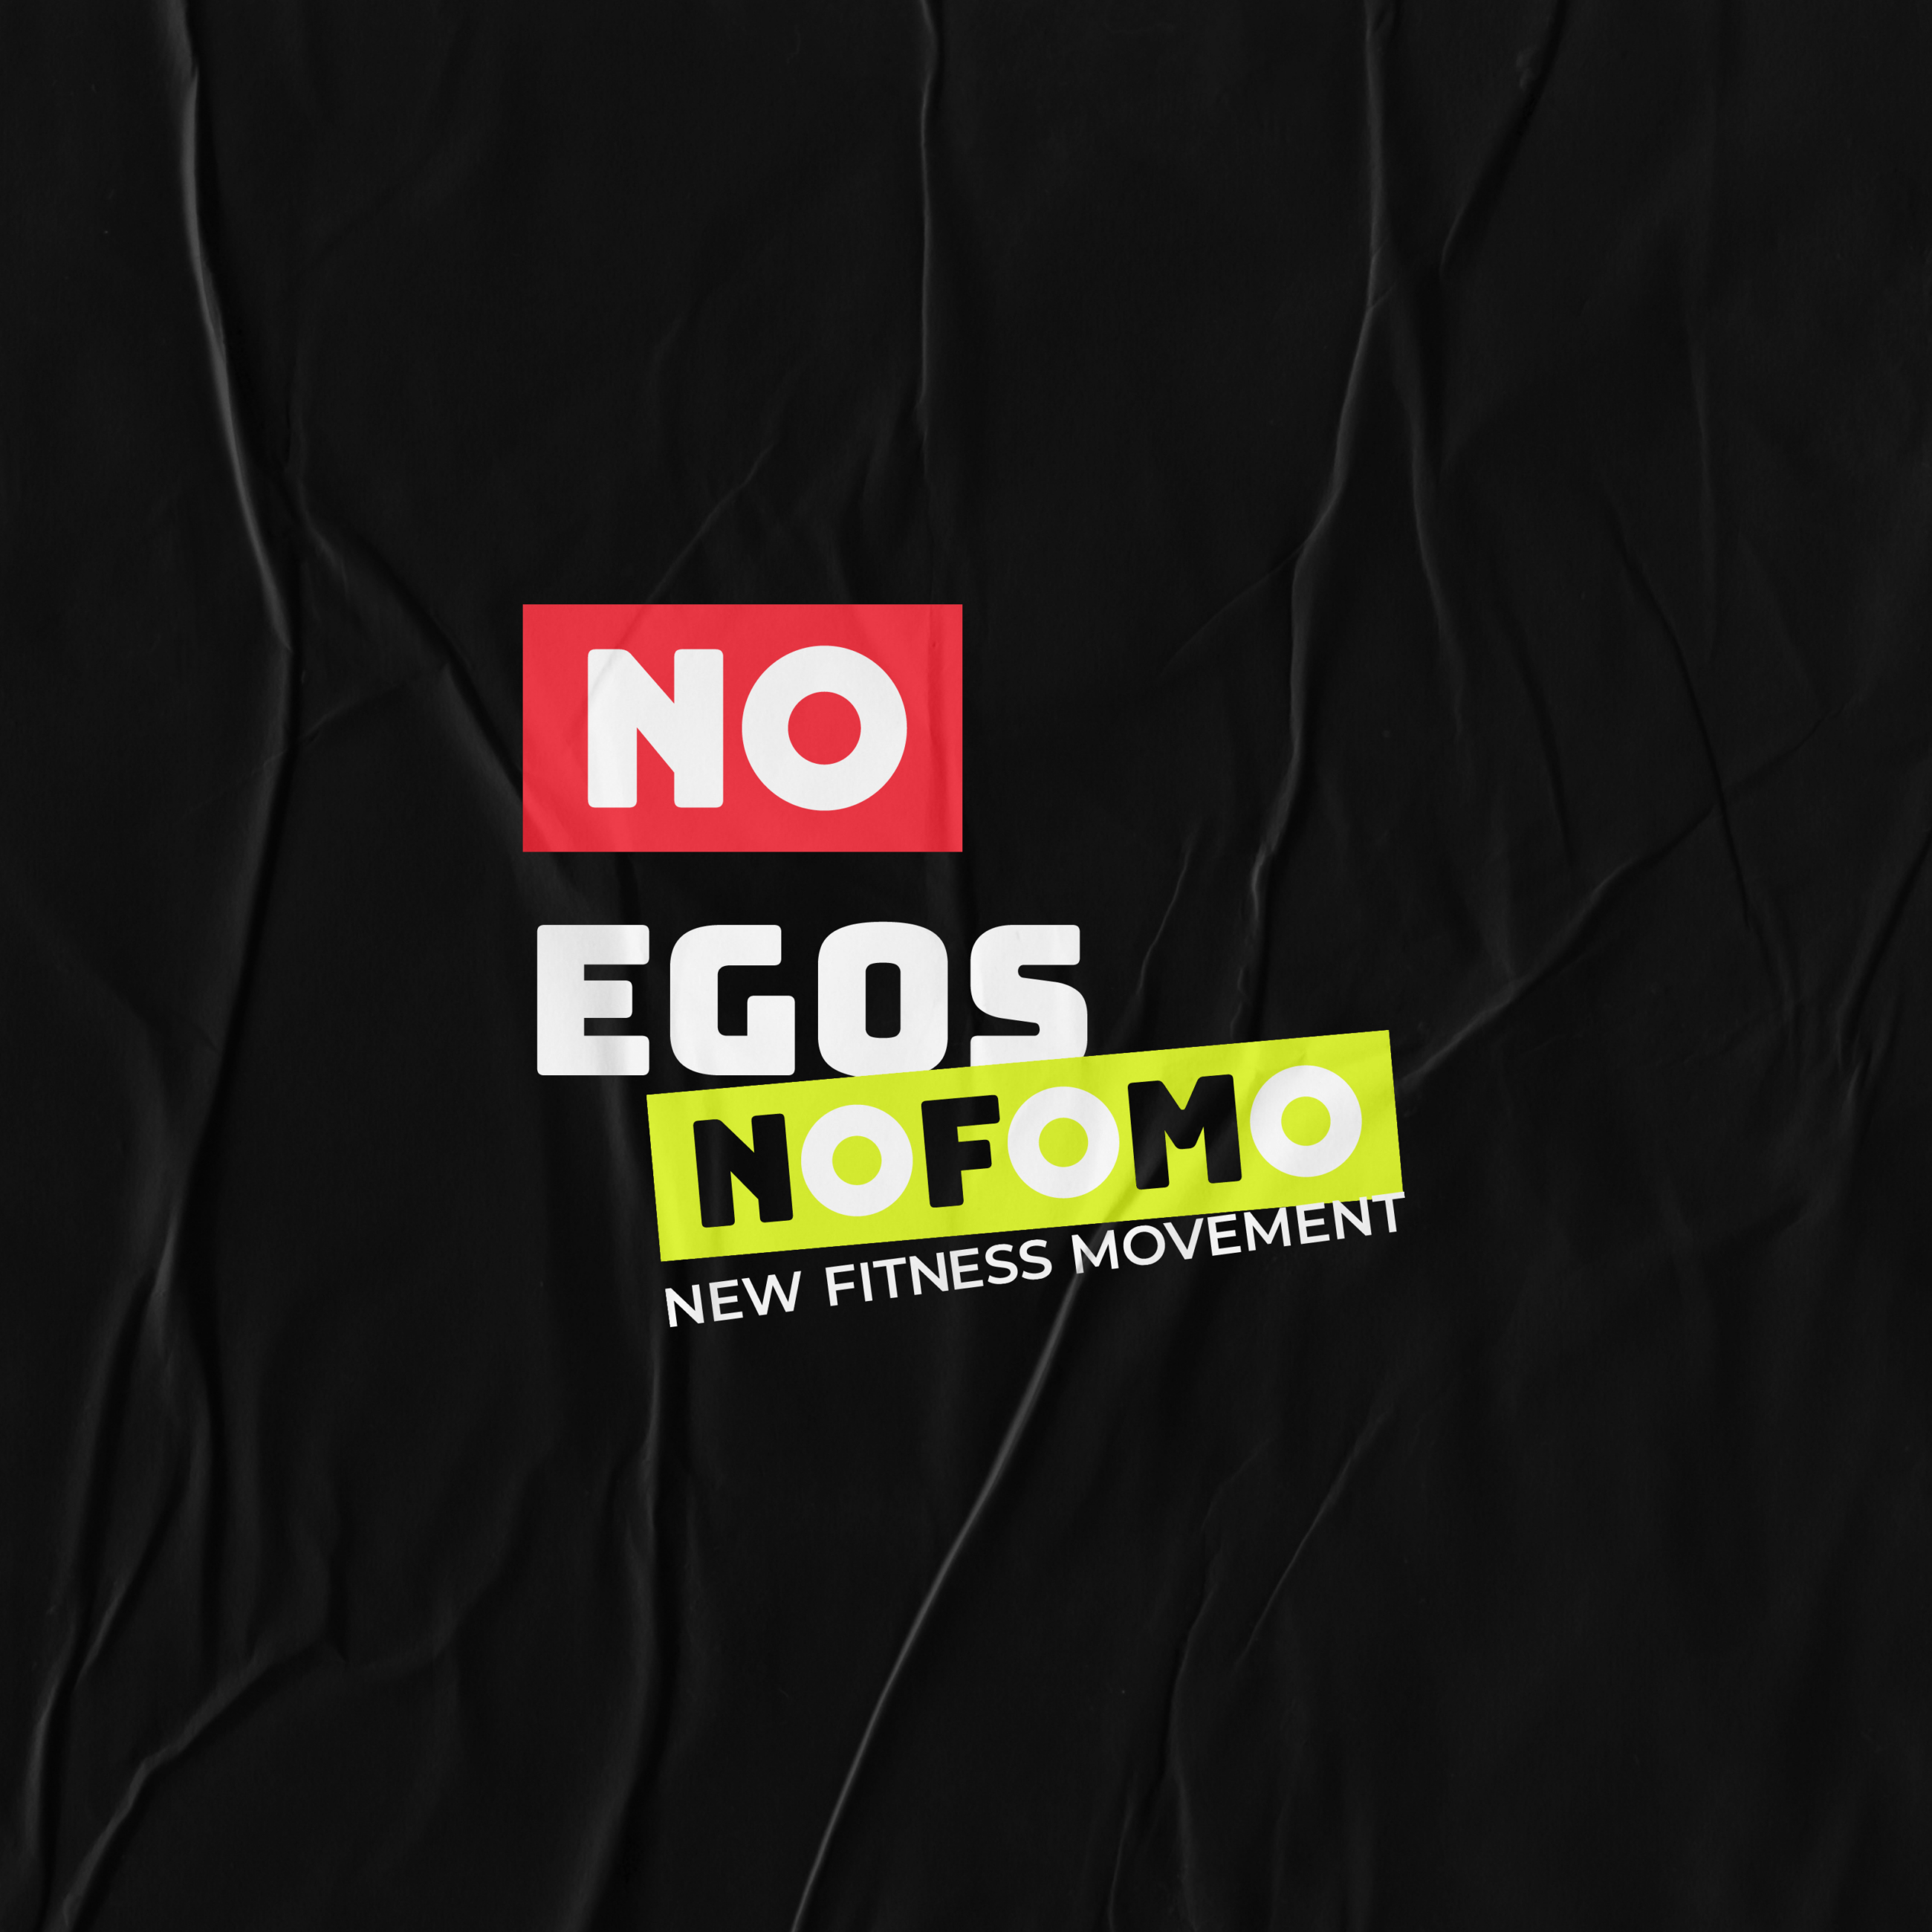 NOFOMO campaign messaging- unique brand identity